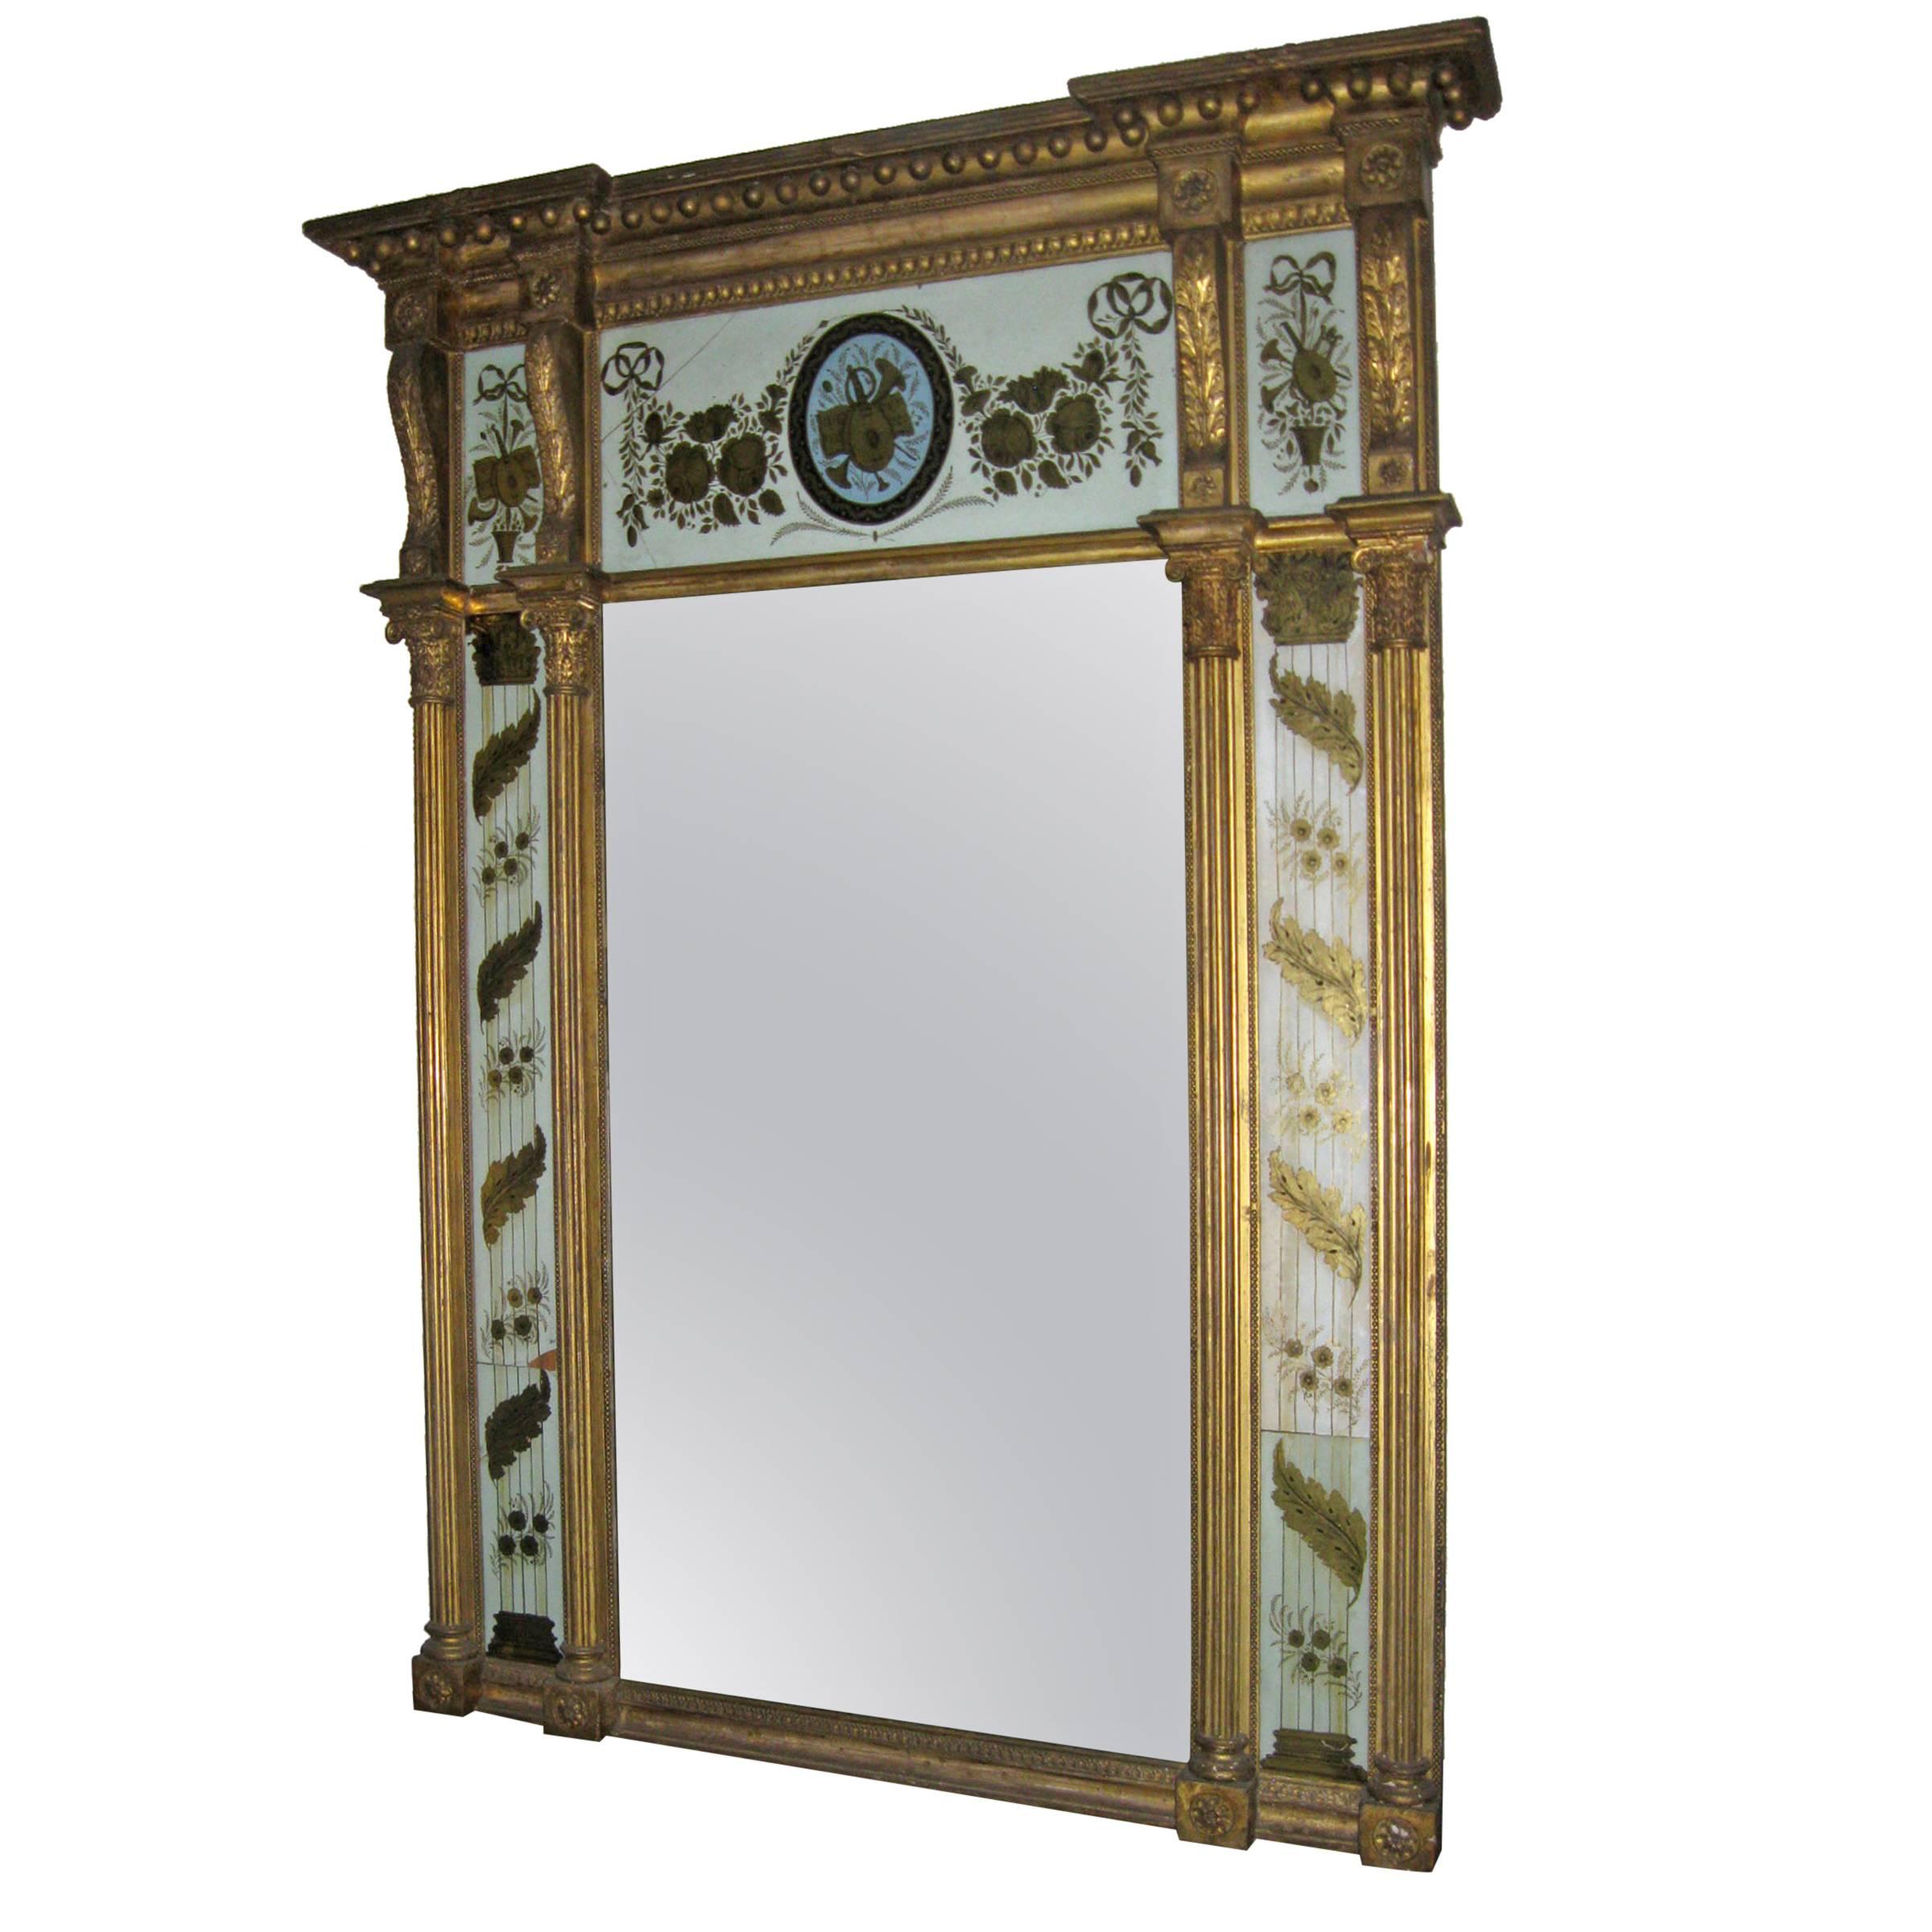 Miroir trumeau à églomisé classique américain du 19e siècle, monument fédéral américain